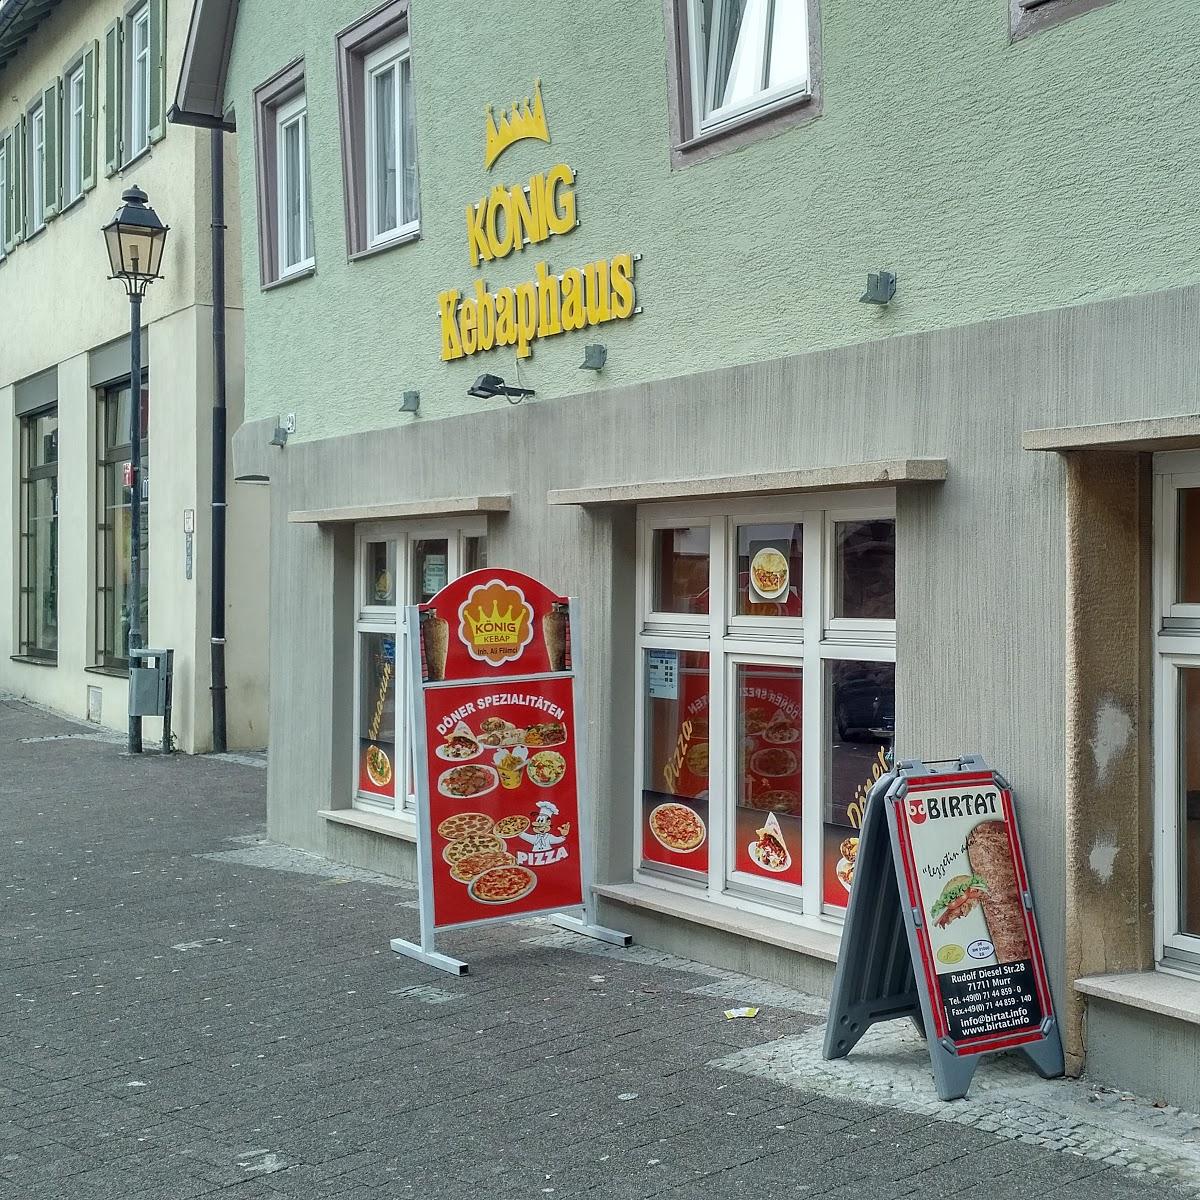 Restaurant "König Kebap" in Markgröningen